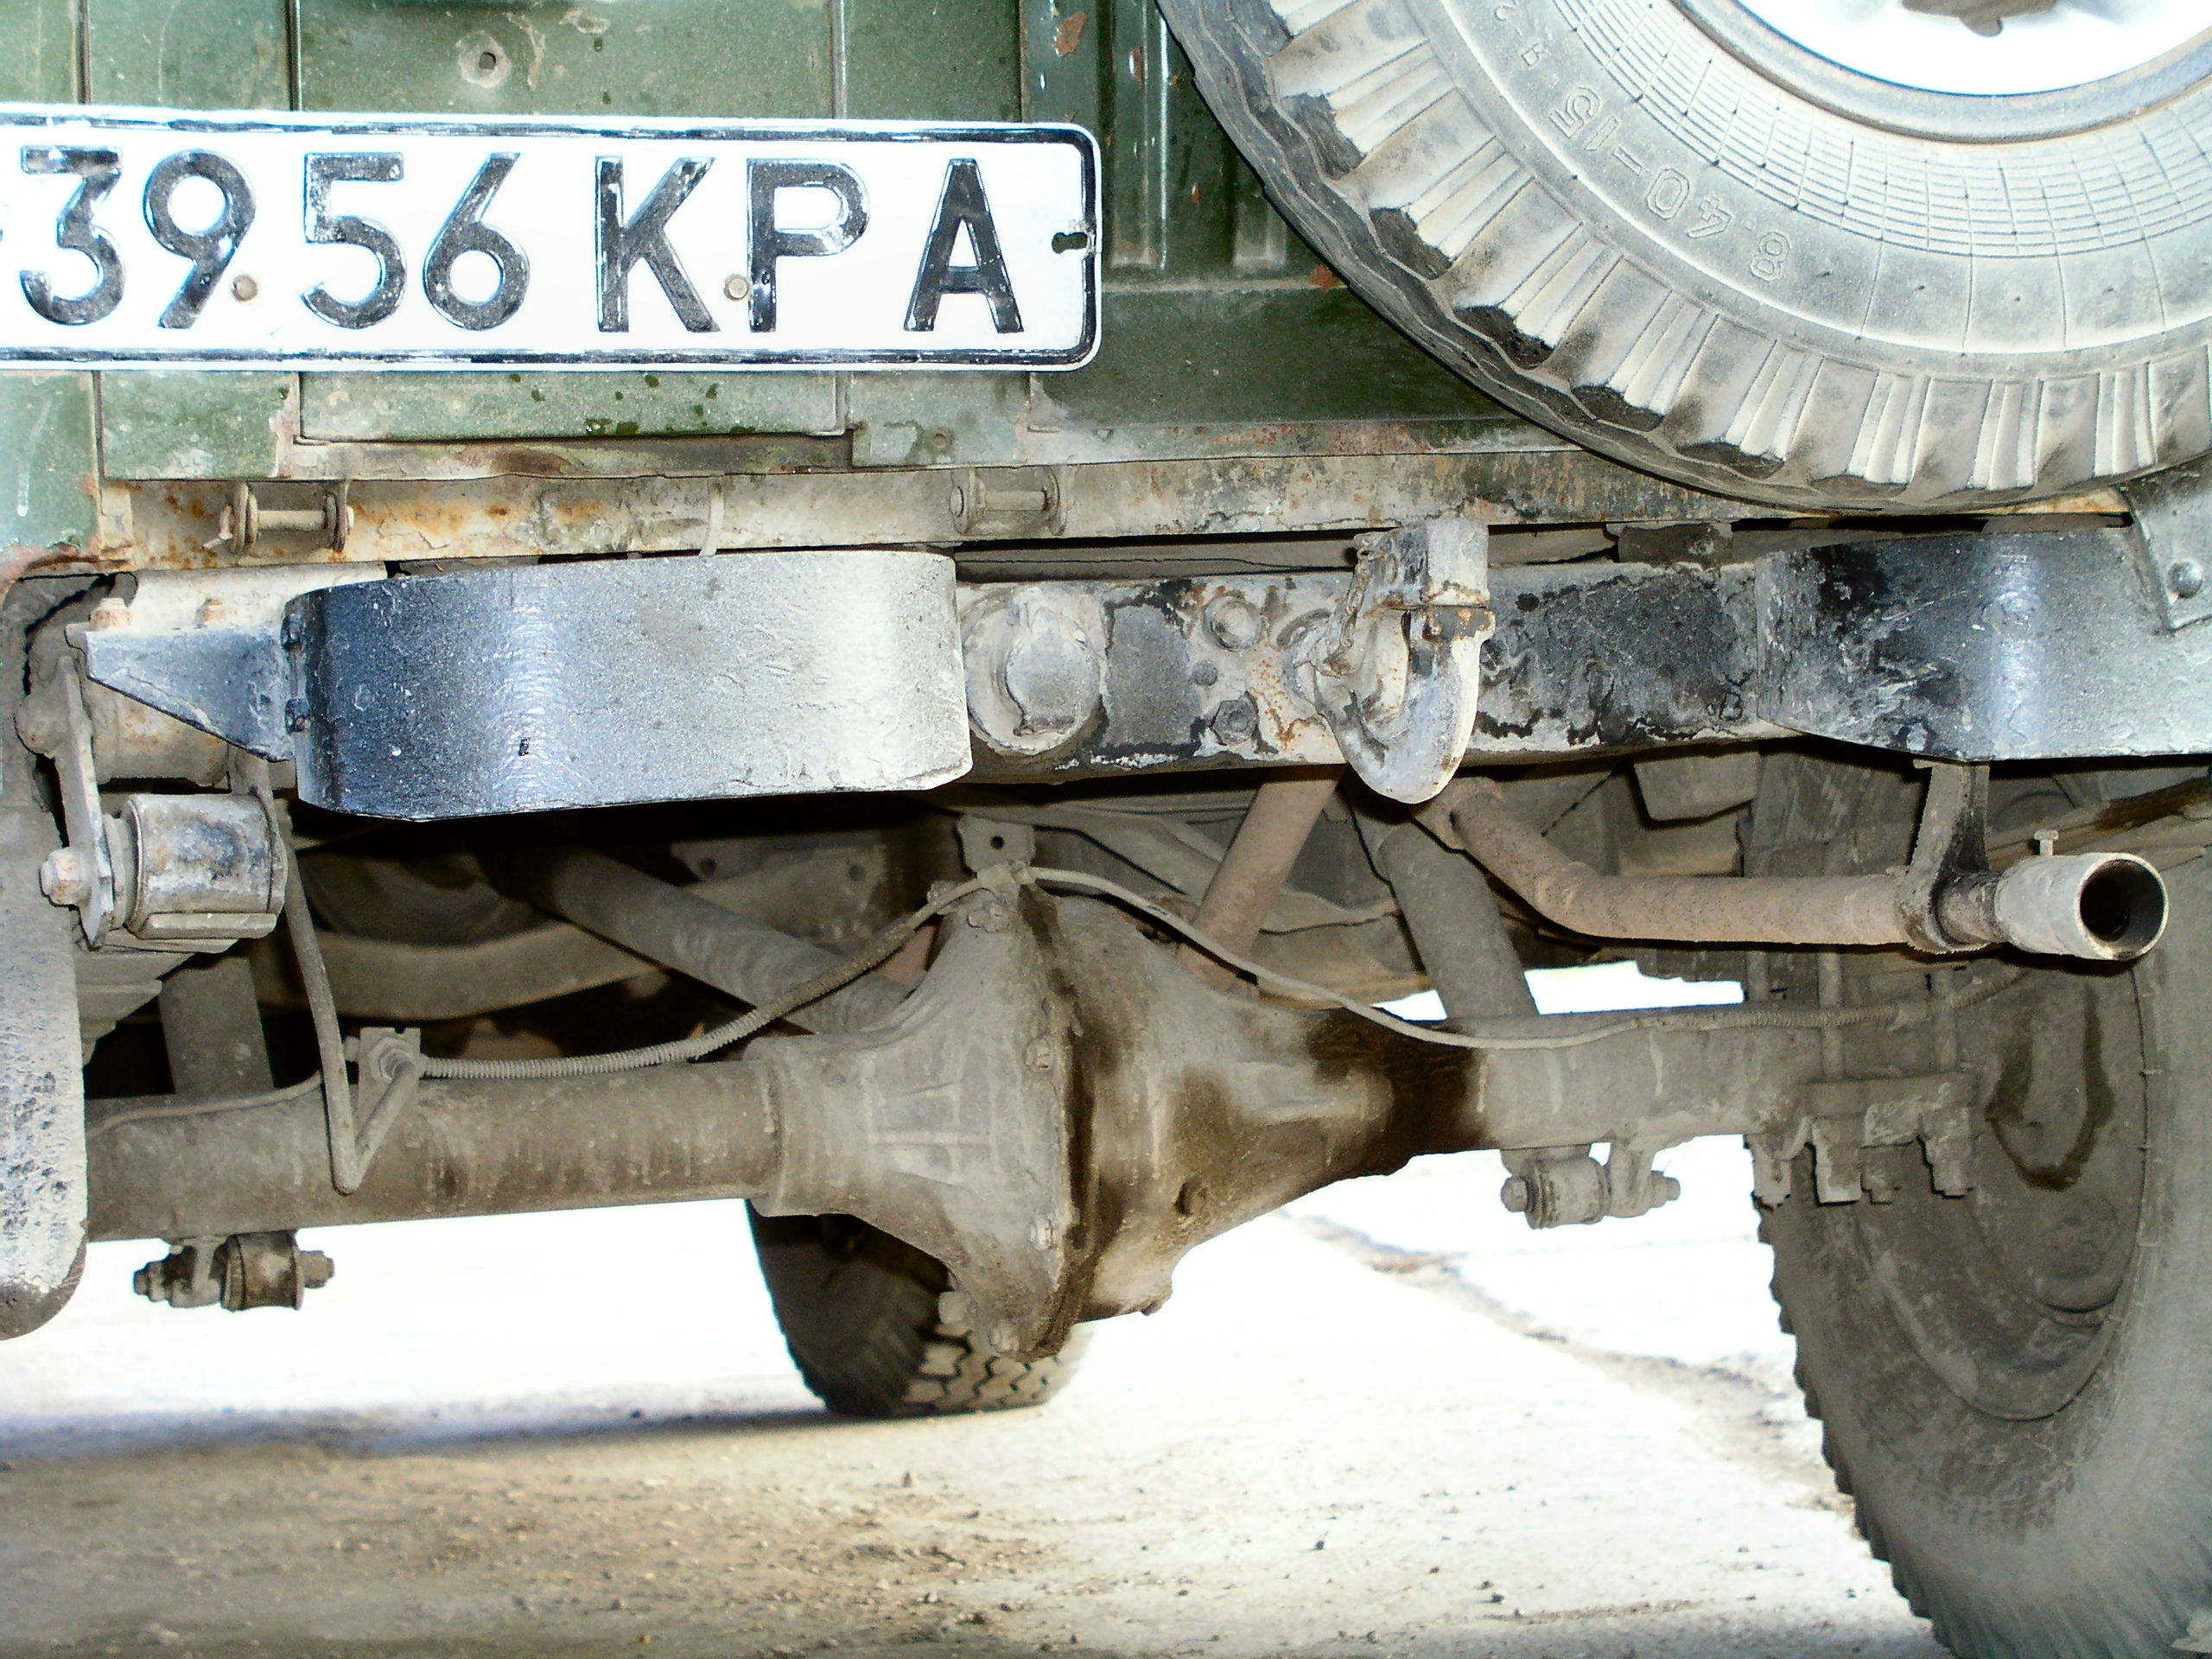 УАЗ-469 внедорожник агрегаты на раме. УАЗ 469 диагностика. УАЗ 469 почта России. Обои на телефон УАЗ.